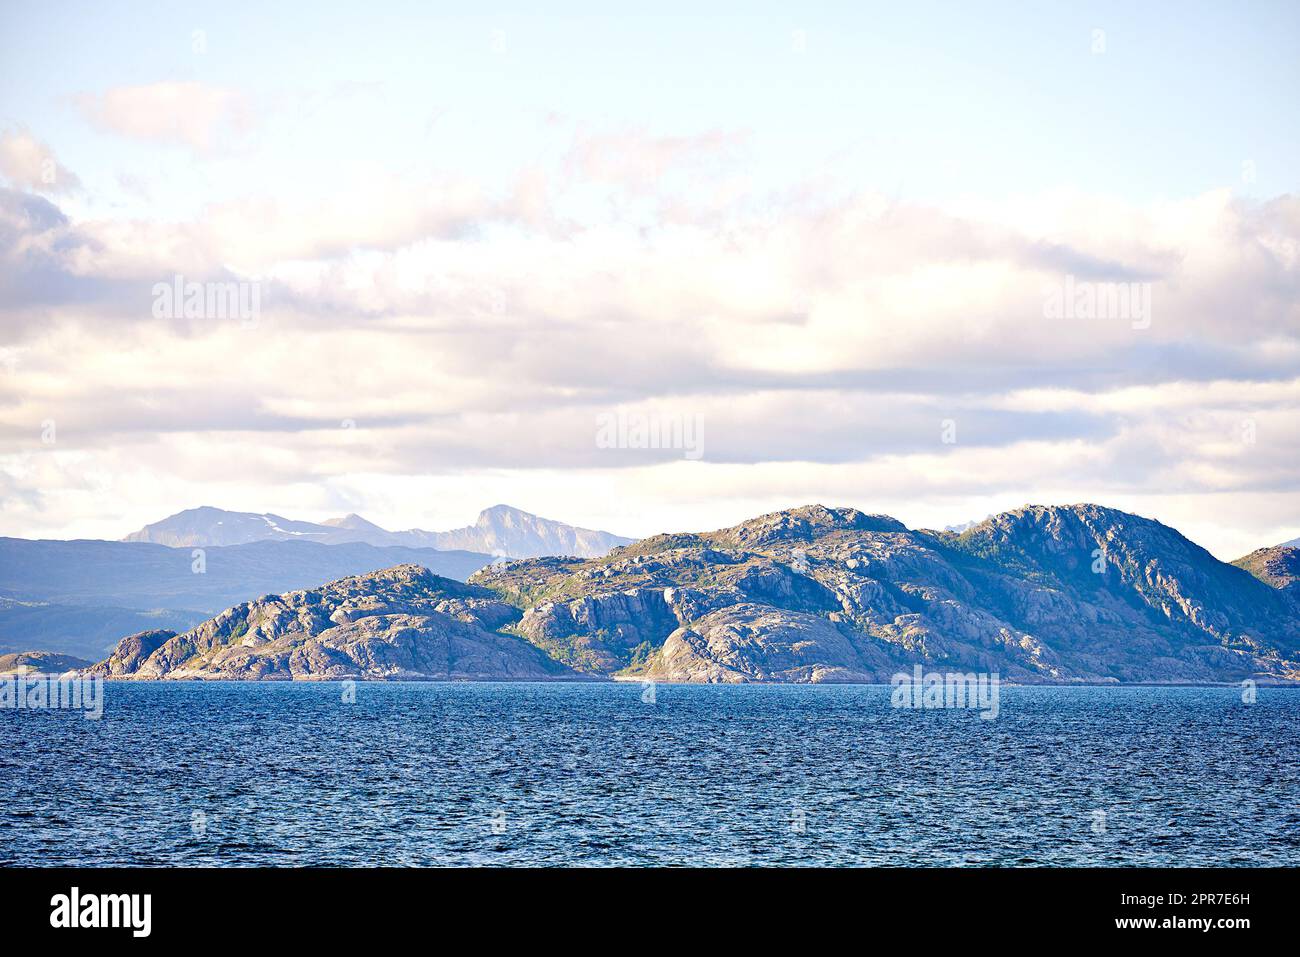 Vue panoramique sur la mer, les montagnes, les rochers et les rochers en Norvège. Vagues d'eau de l'océan à marée, ciel bleu avec nuages et espace de copie. Voyage et tourisme à l'étranger et à l'étranger vers une destination éloignée et paisible Banque D'Images